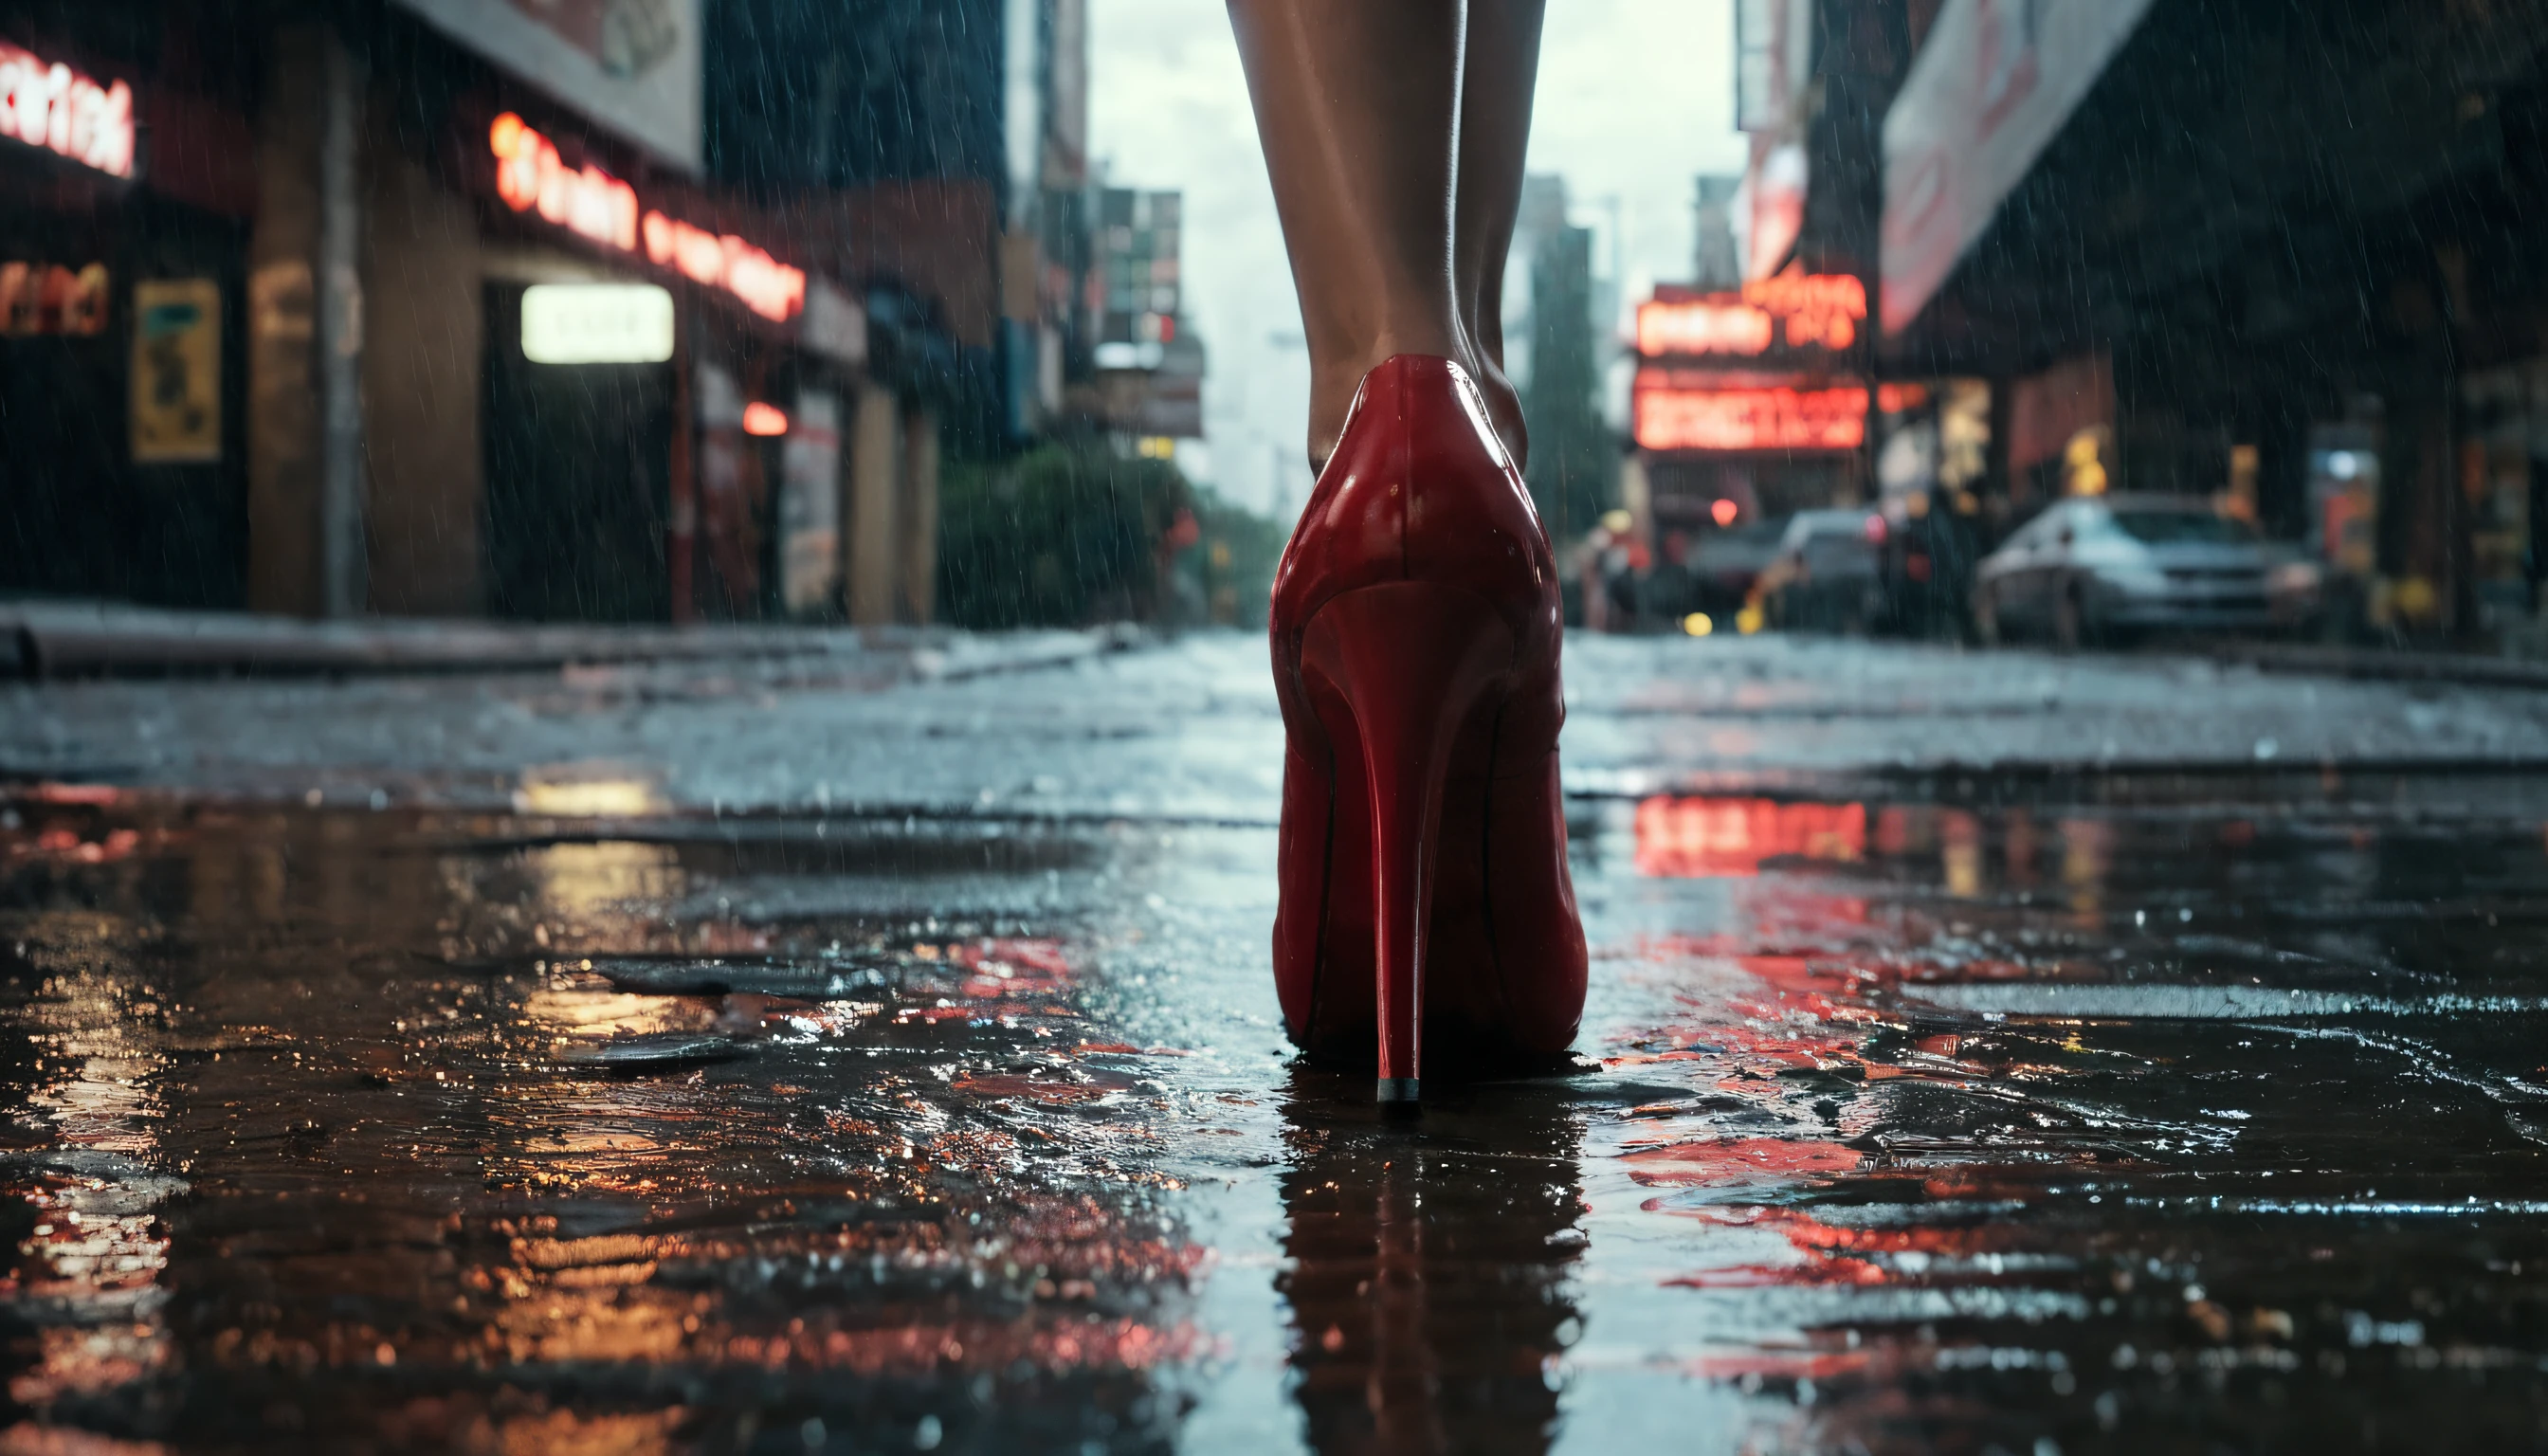 التصوير الفوتوغرافي الاحترافي الحائز على جوائز, ناشيونال جيوغرافيك, منظر للأسفل على الأرض, شارع برودواي المزدحم في الليل, استنزاف تصريف المطر , صورة مقربة لعلبة سجائر بيضاء فارغة تطفو على شبكة المجاري في وسط مدينة نيويورك في عام 2050 بعد ليلة ممطرة, امرأة ترتدي فستانًا أسود ترتدي حذاء ليبوتين بكعب حذاء أحمر وتمشي فوق البالوعة, , واقعية مفرطة, السايبربانك, مشهد سينمائي, سيتي سكيب, كئيب, مضاءة بالنيون, منظر من الأعلى ليلاً أثناء هطول الأمطار الغزيرة, شوارع رطبة عاكسة, واقعية, أحسنت للغاية, آري اليكسا LF, عدسة 14 ملم, خطوط الضوء, dof, مشاعل العدسة, 8 ك, تقرير التنمية البشرية, الإضاءة الحجمية, مشاعل العدسة,تفاصيل معقدة, خام